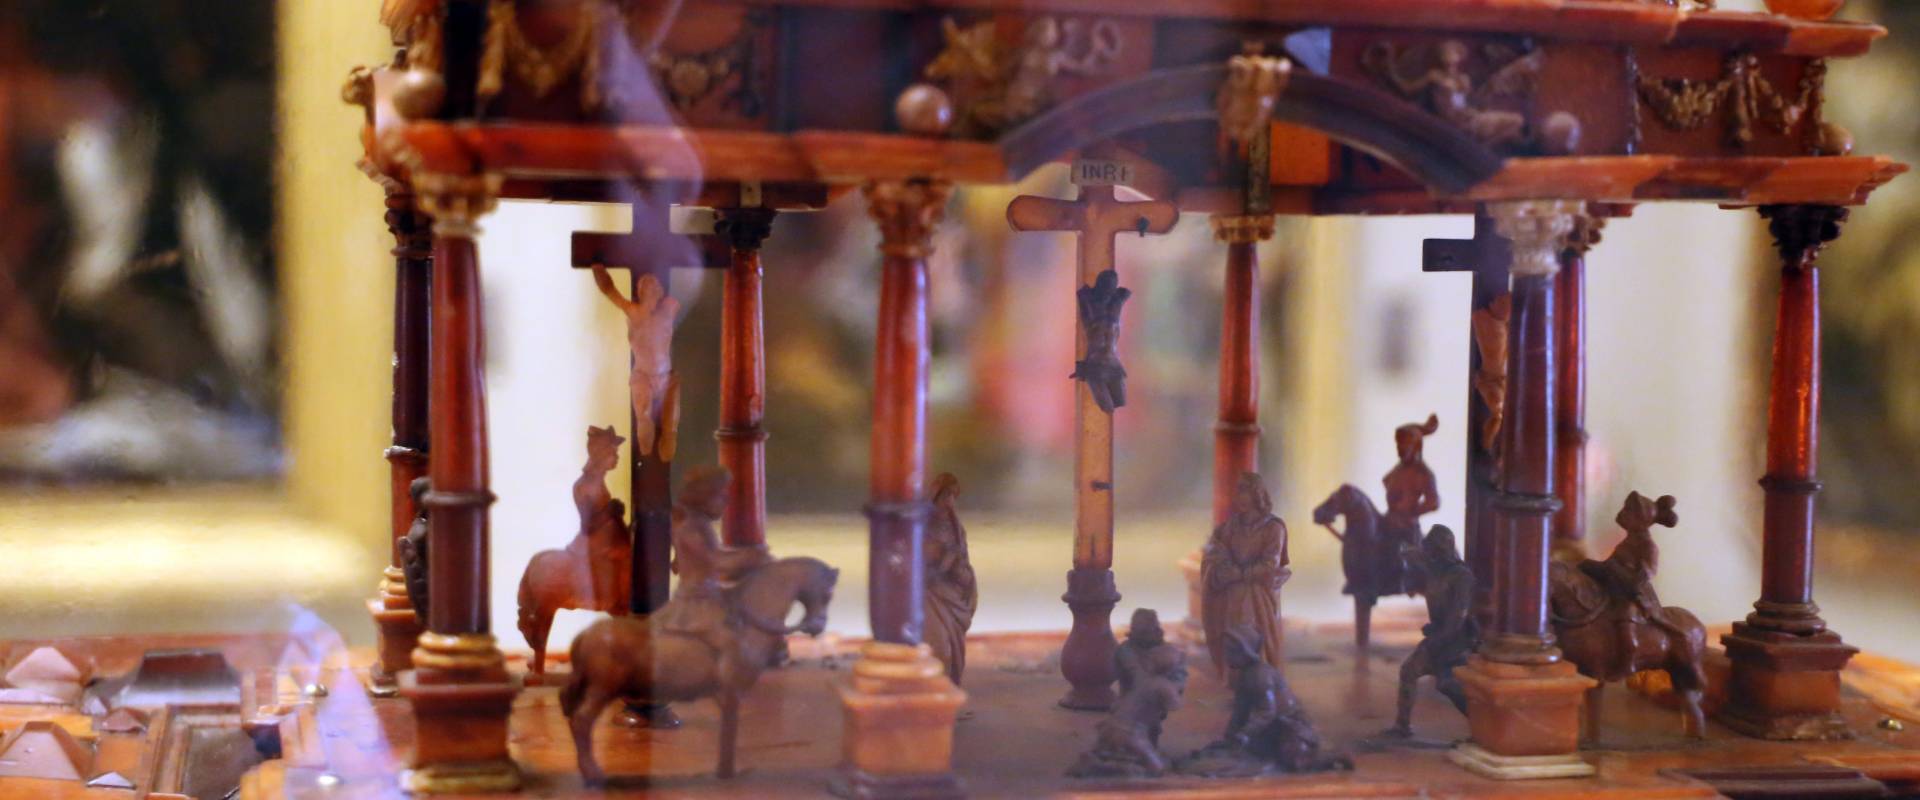 Manifattura tedesca, stipo in legno, ottone, vetro, ambra e avorio, 1625 ca. 05 foto di Sailko